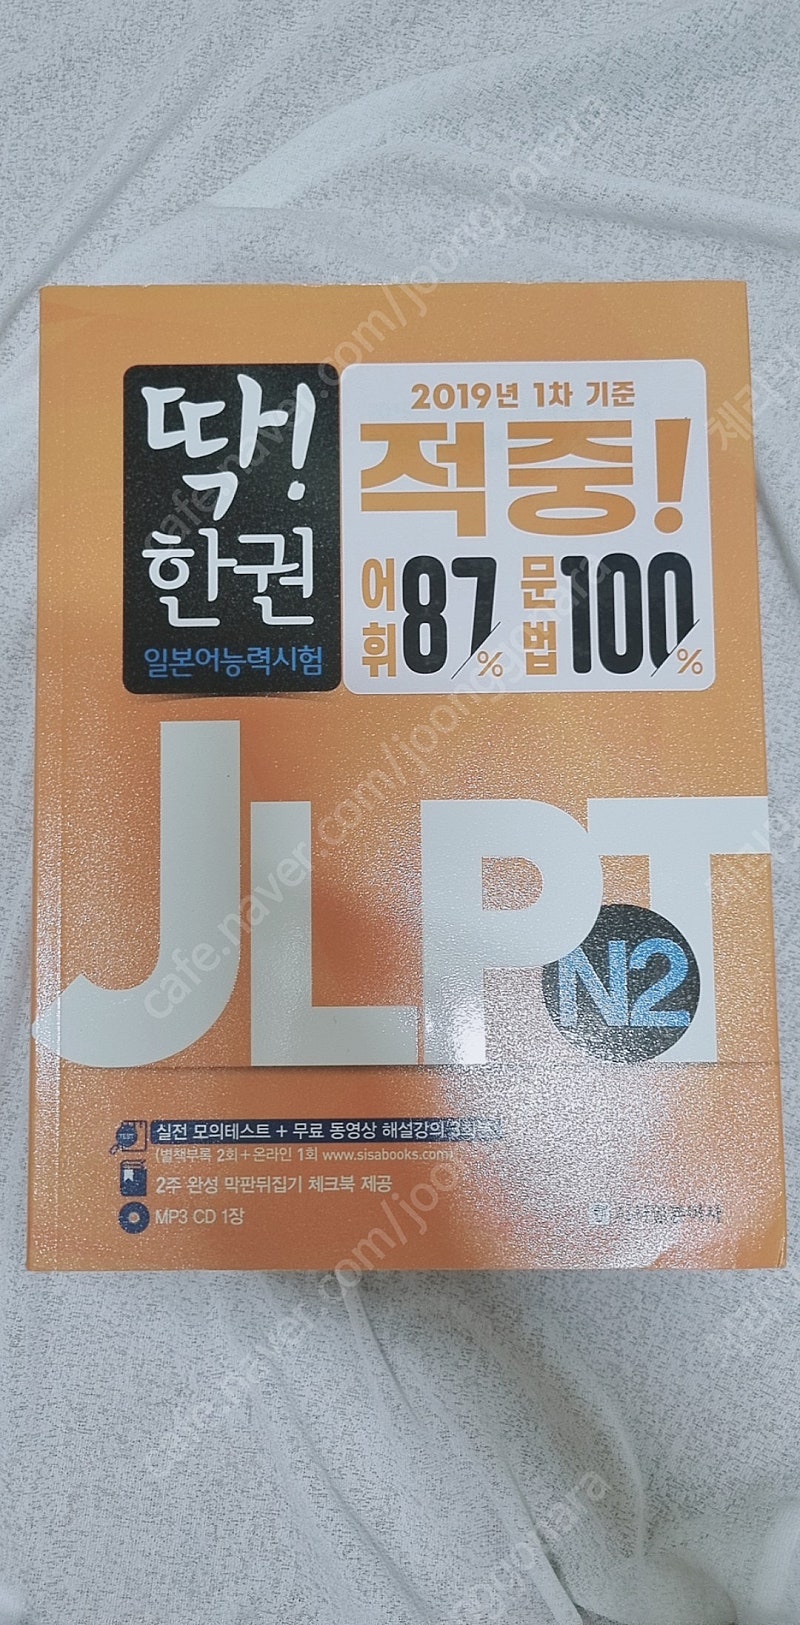 JLPT N2 서적 판매